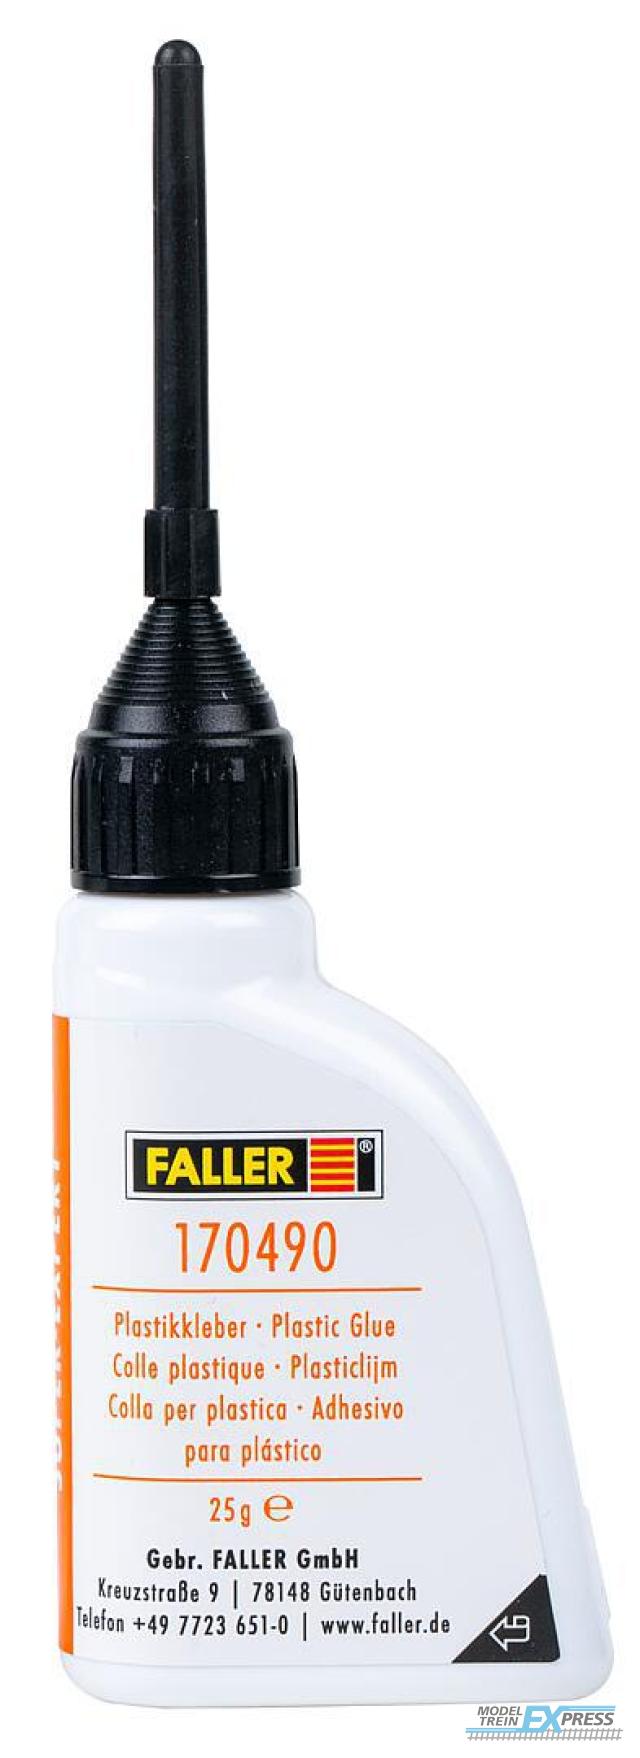 Faller 170490NLEN SUPER-EXPERT PLASTICLIJM 25 G NL/ENG